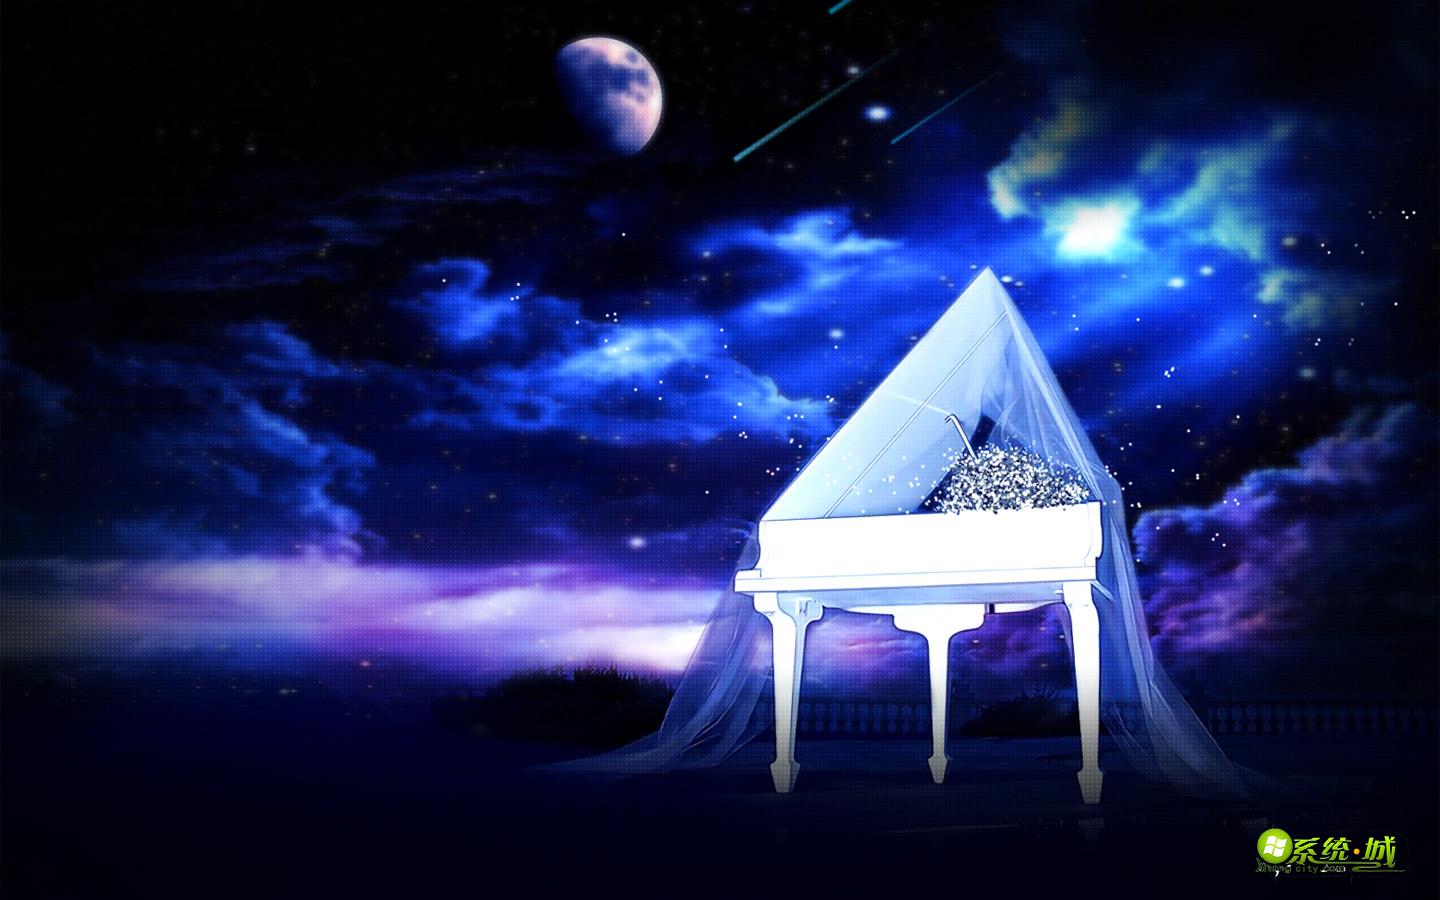 夜幕钢琴曲xp系统主题